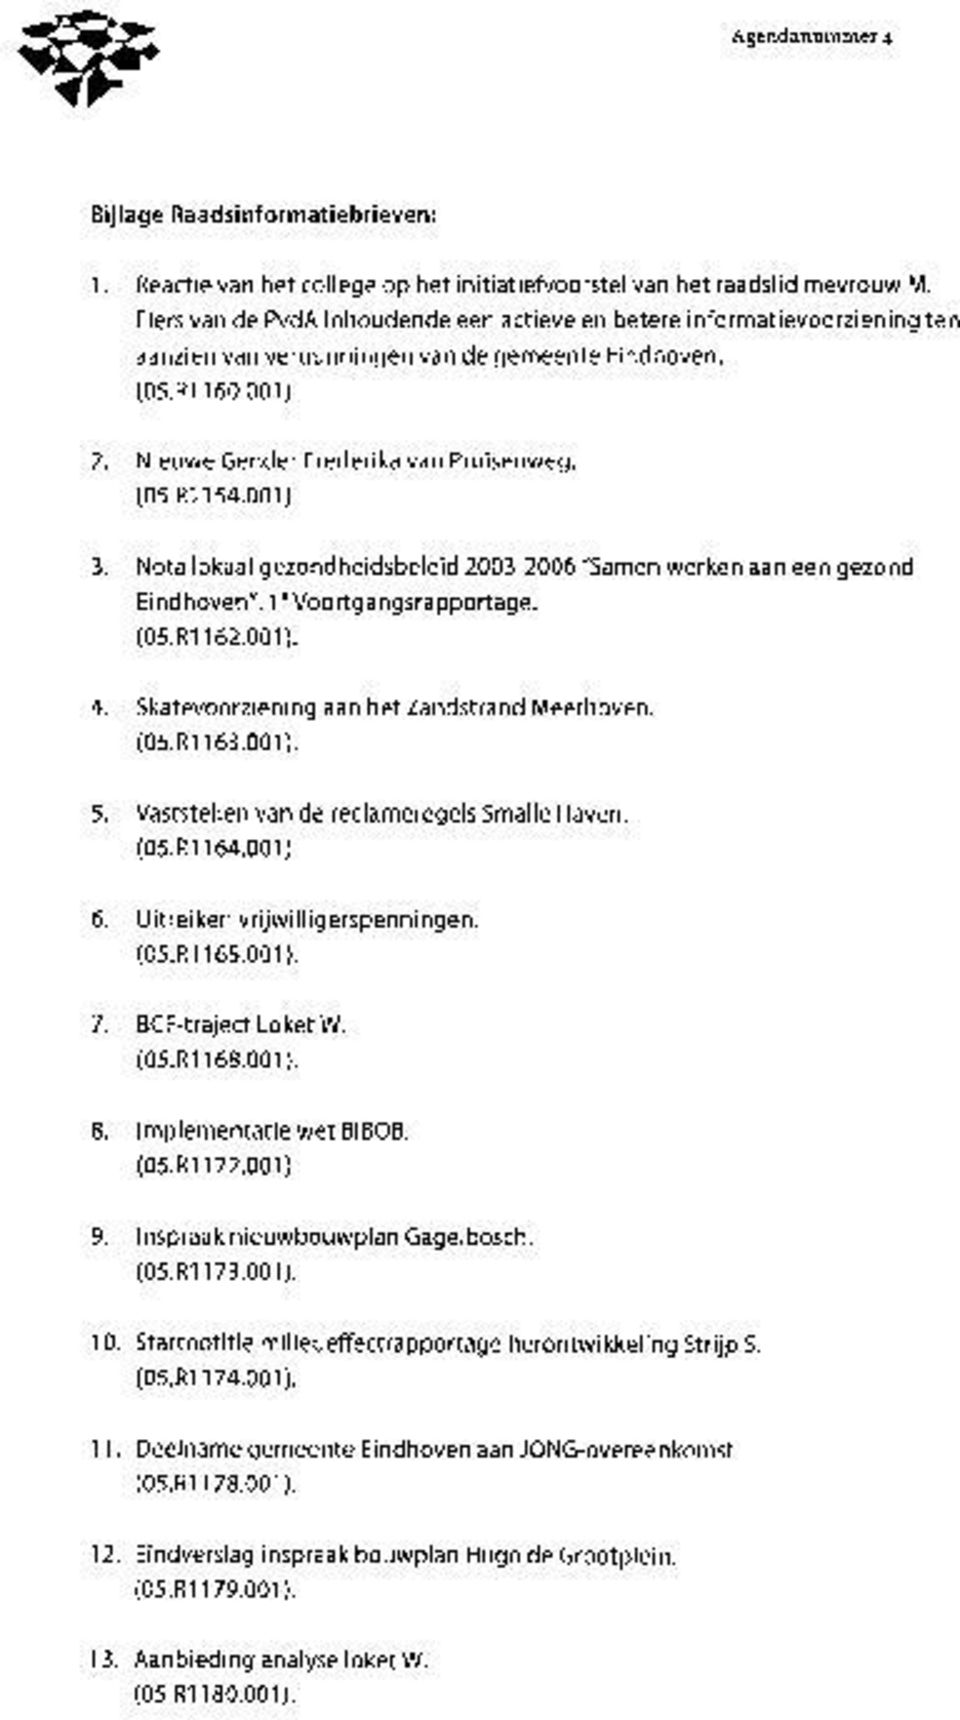 001). 3. Nota lokaal gezondheidsbeleid 2003-2006 "Samen werken aan een gezond Eindhoven". 1 Voortgangsrapportage. (05.R1162.001). 4. Skatevoorziening aan het Zandstrand Meerhoven. (05.R1163.001). 5.